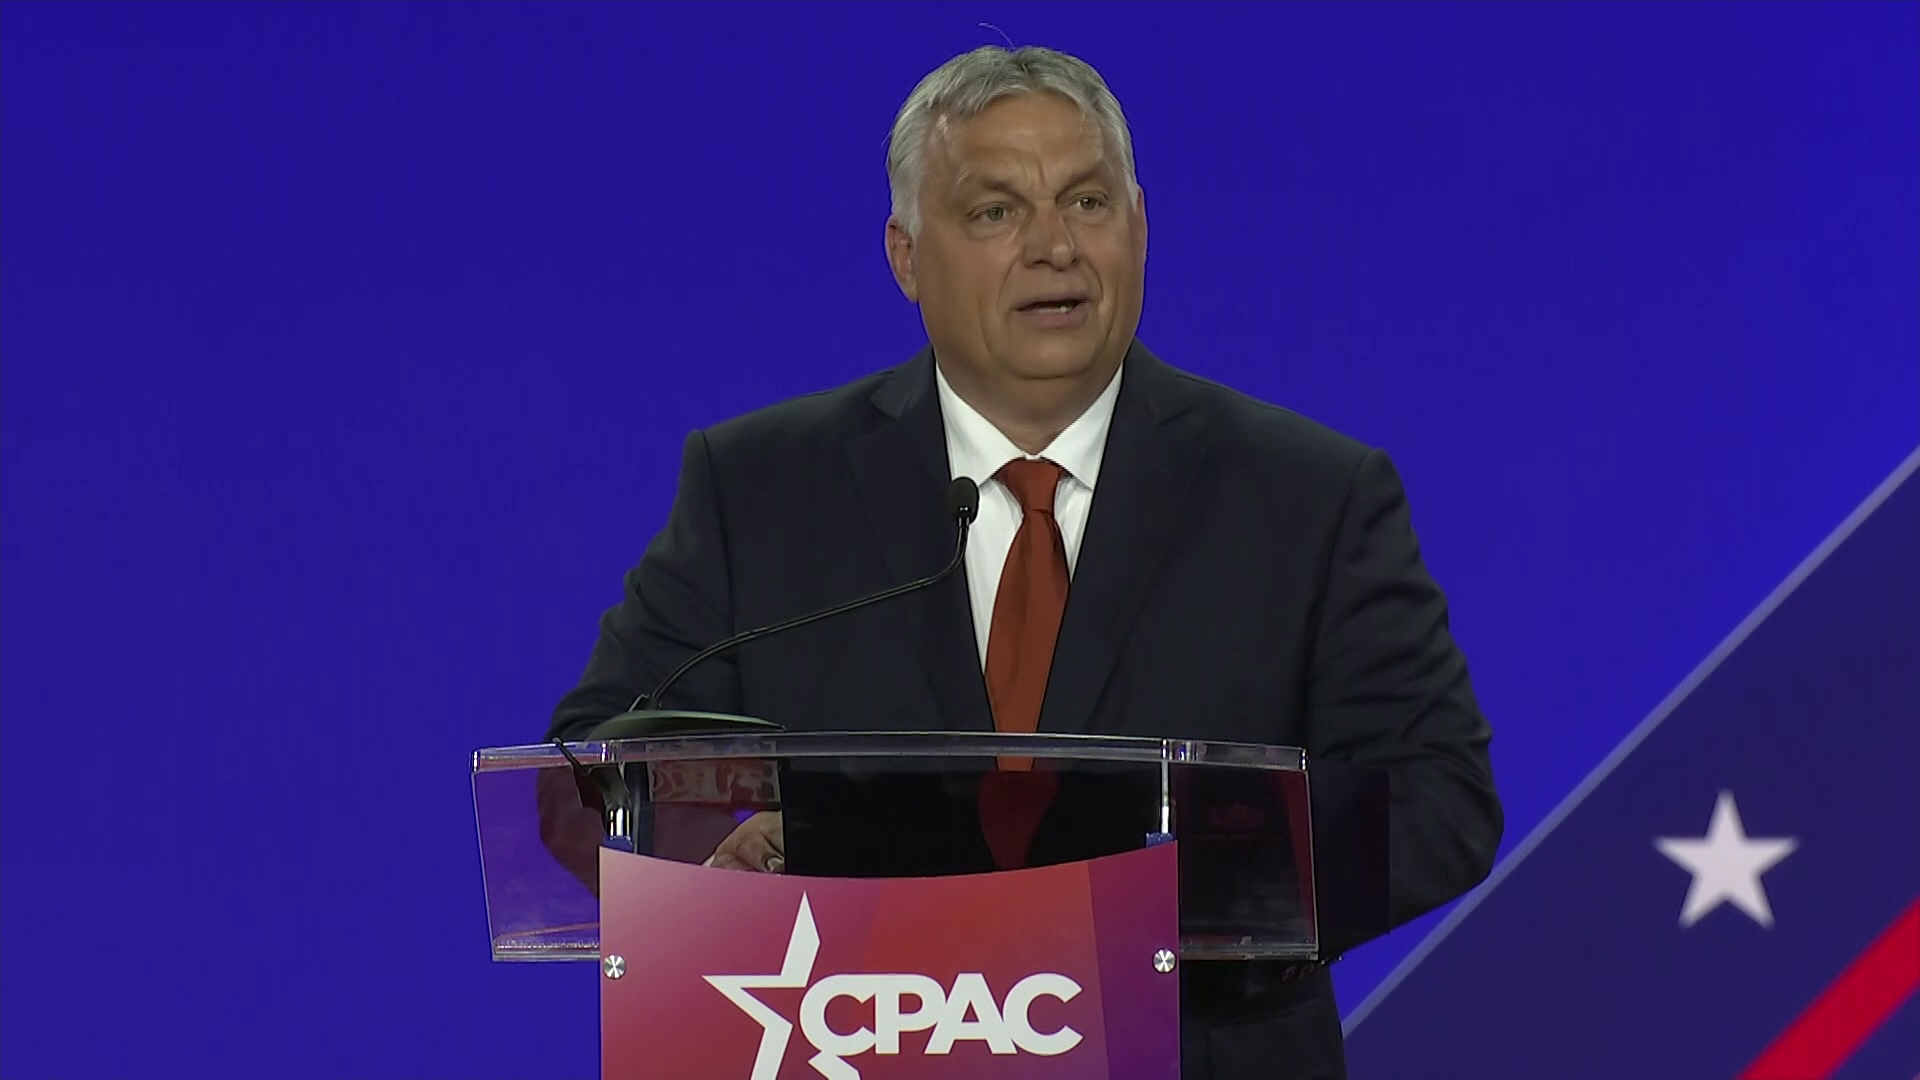 Vastapssal fogadták Orbán Viktor beszédét az amerikai konzervatívok 